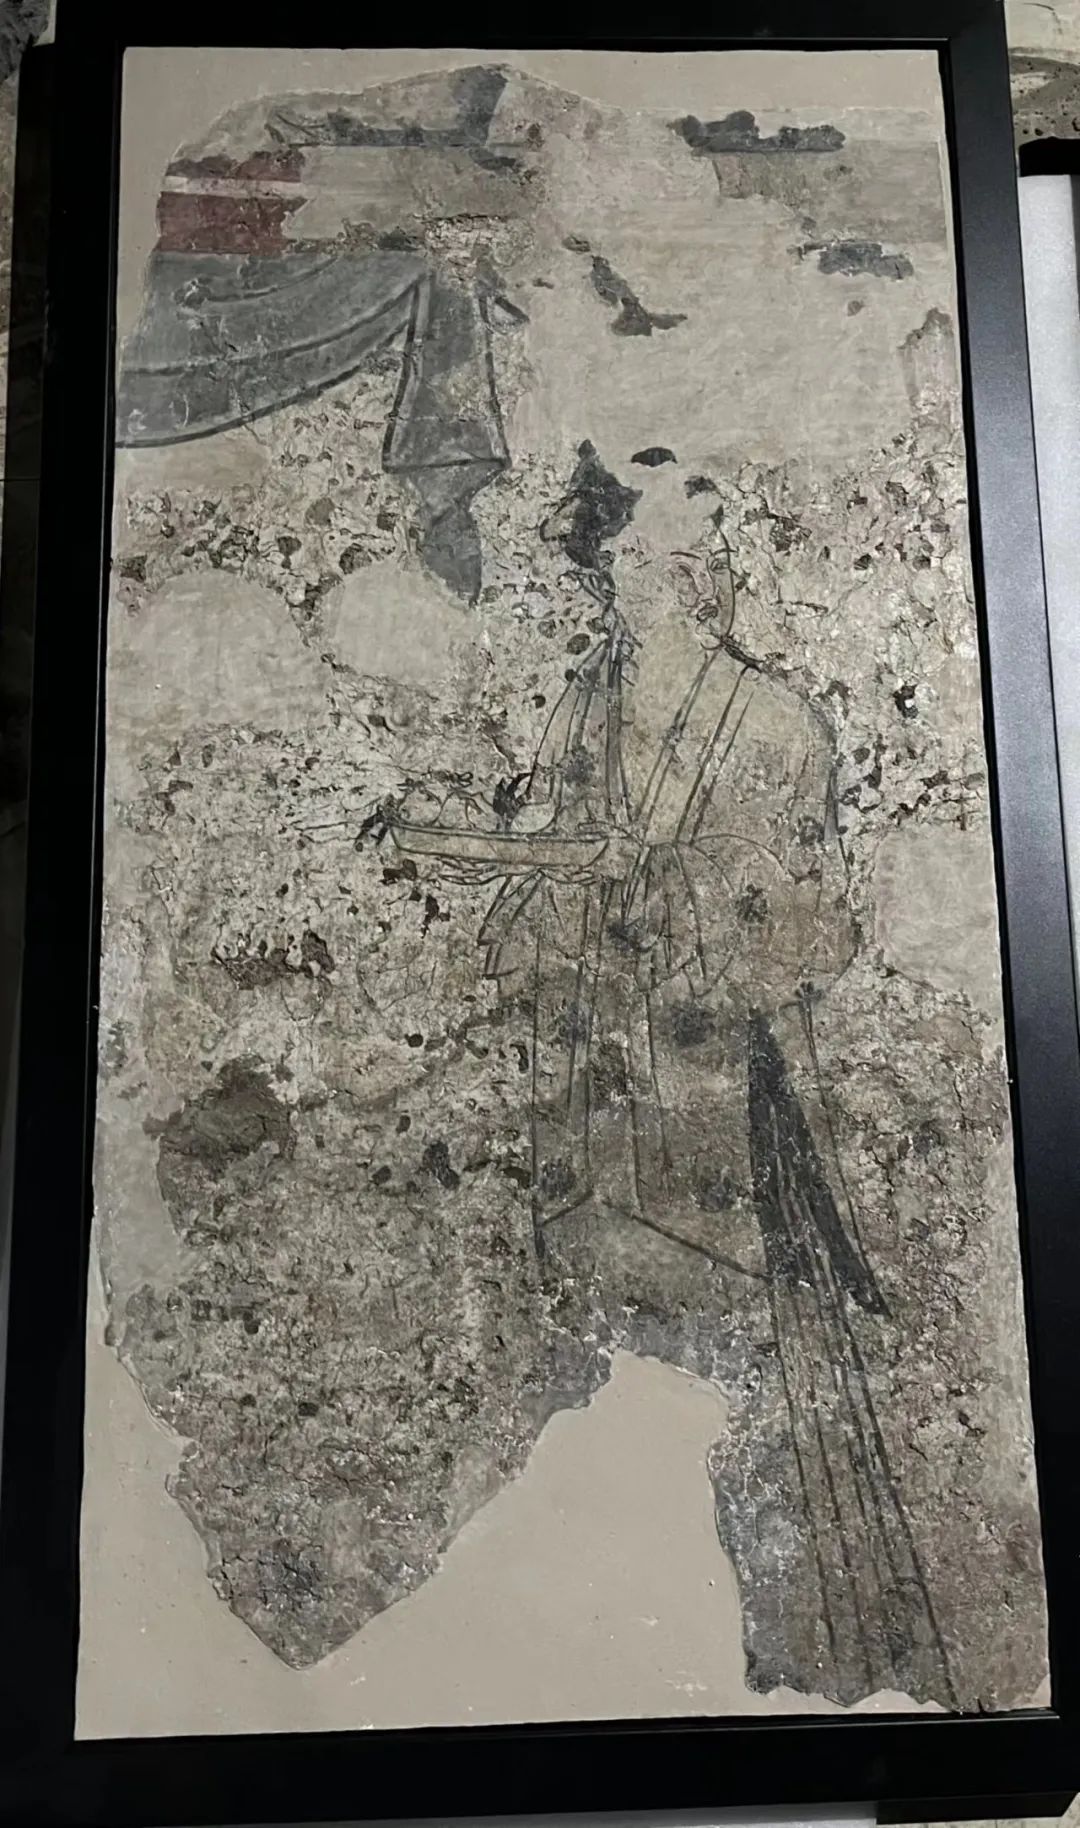 固安辽代古墓精美壁画呈现千年艺术和时代风格749 作者:固安攻略 帖子ID:68589 固安,辽代,古墓,精美,壁画